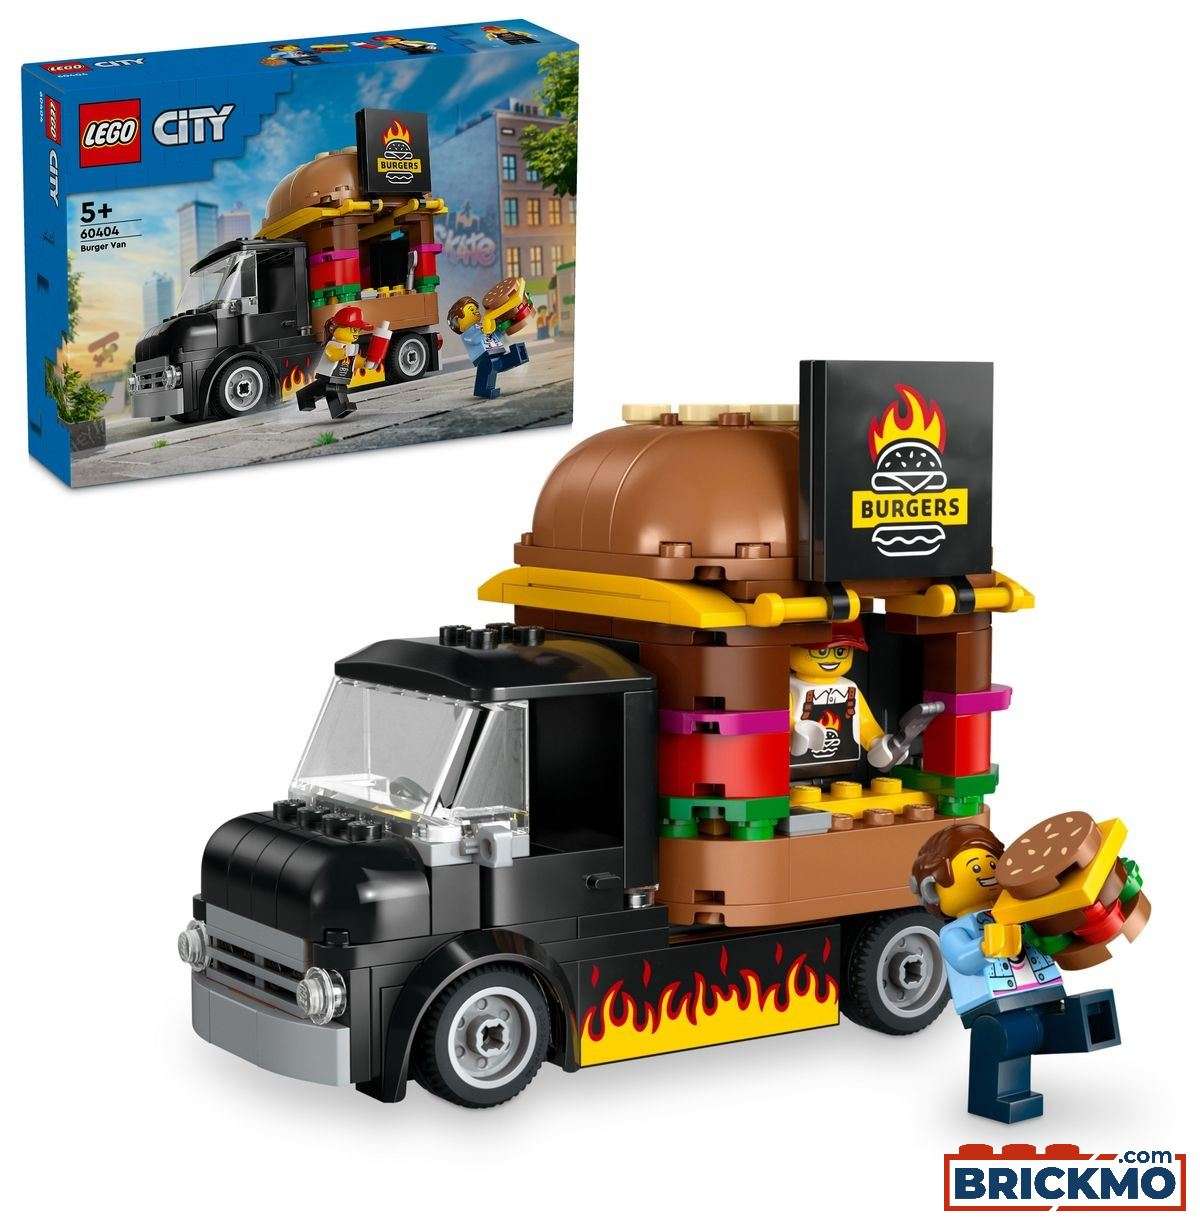 LEGO City 60404 Le food-truck de burgers 60404